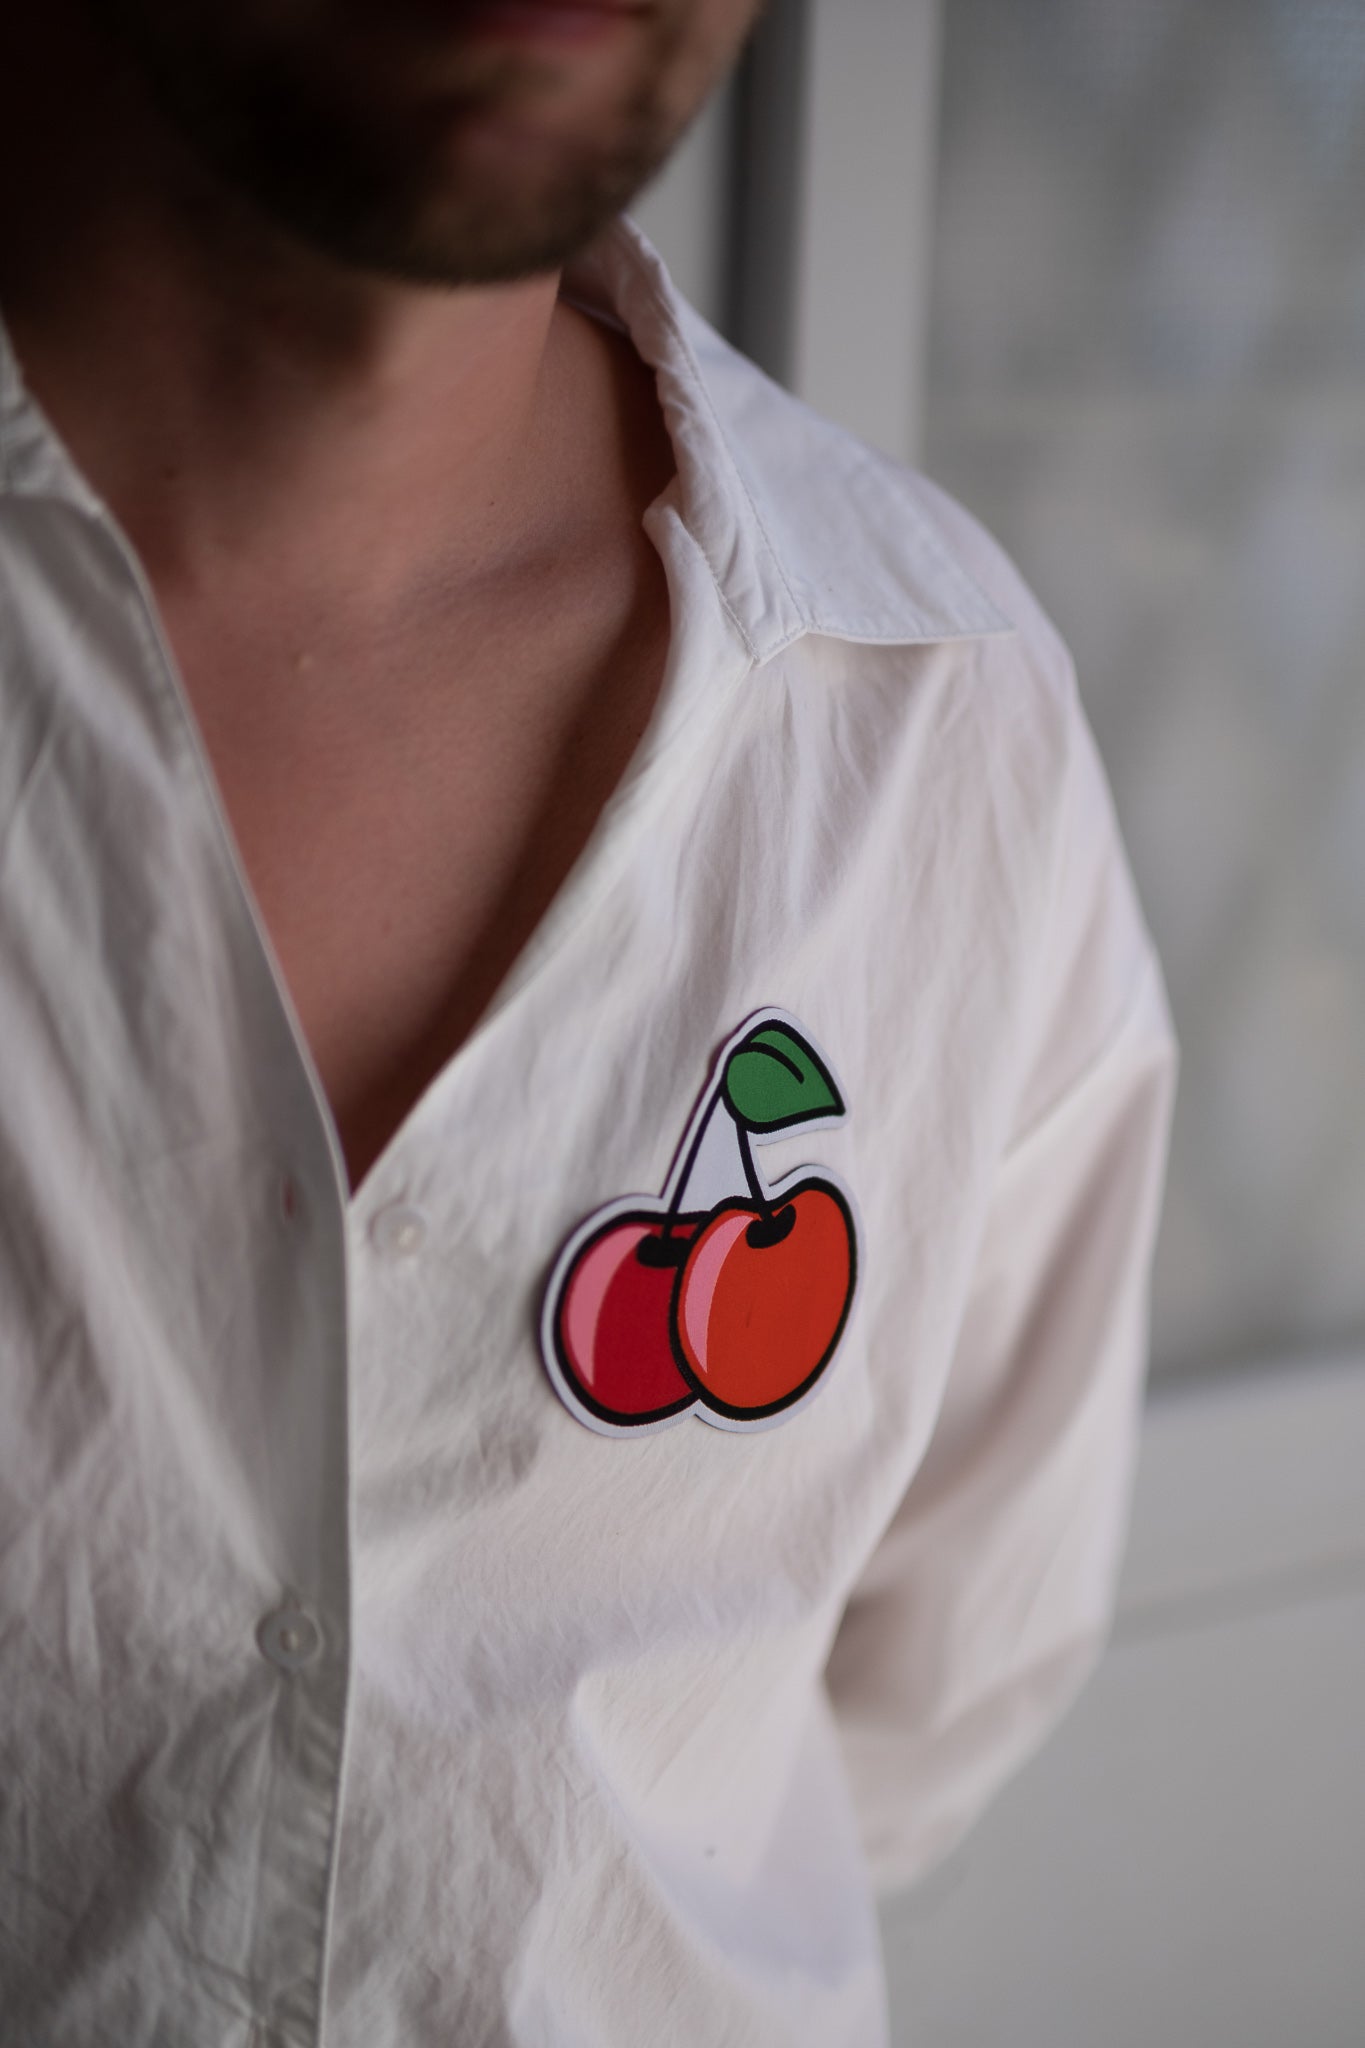 Cherries är en av våra absoluta favoriter!  Som man säger "like cherries on a pie" Vår patchie på en vit skjorta. 